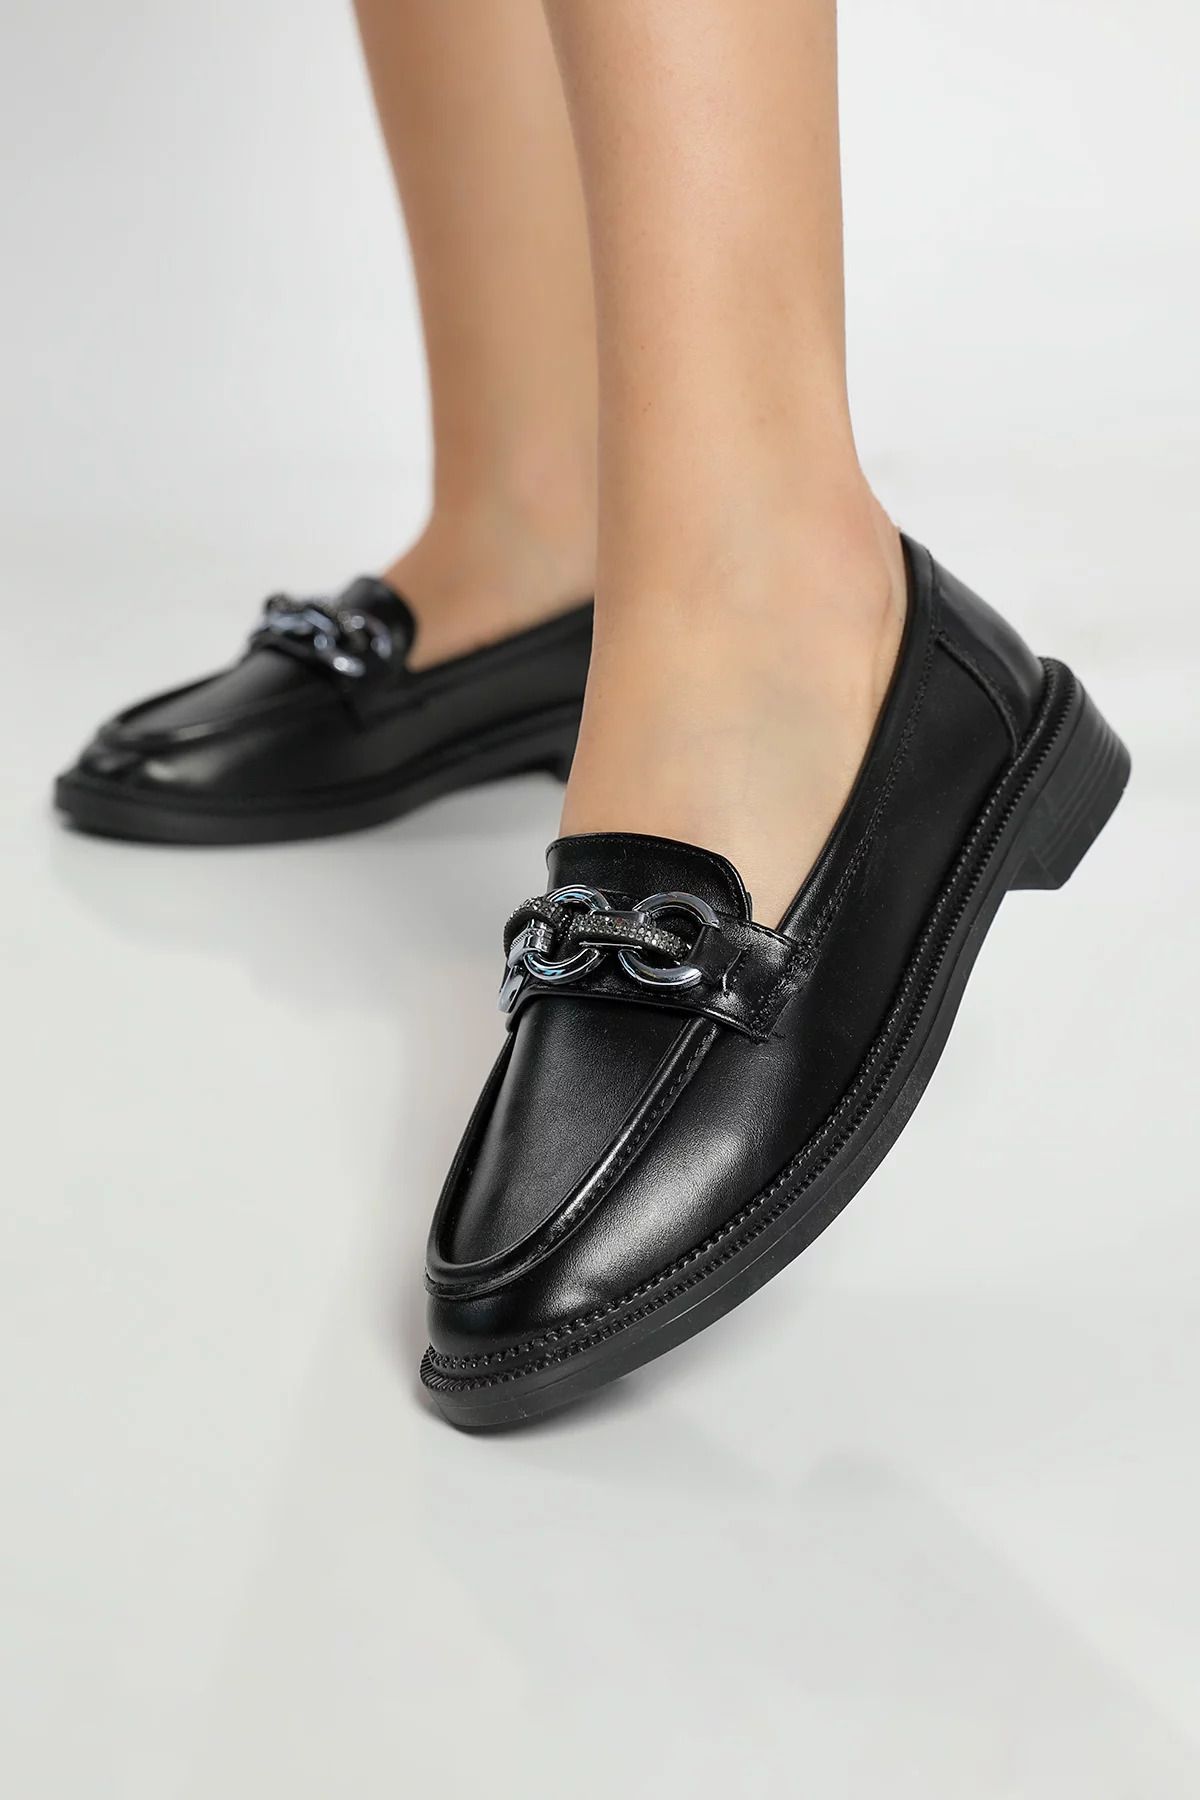 Julude Siyah Taş Detaylı Kadın Günlük Ayakkabı